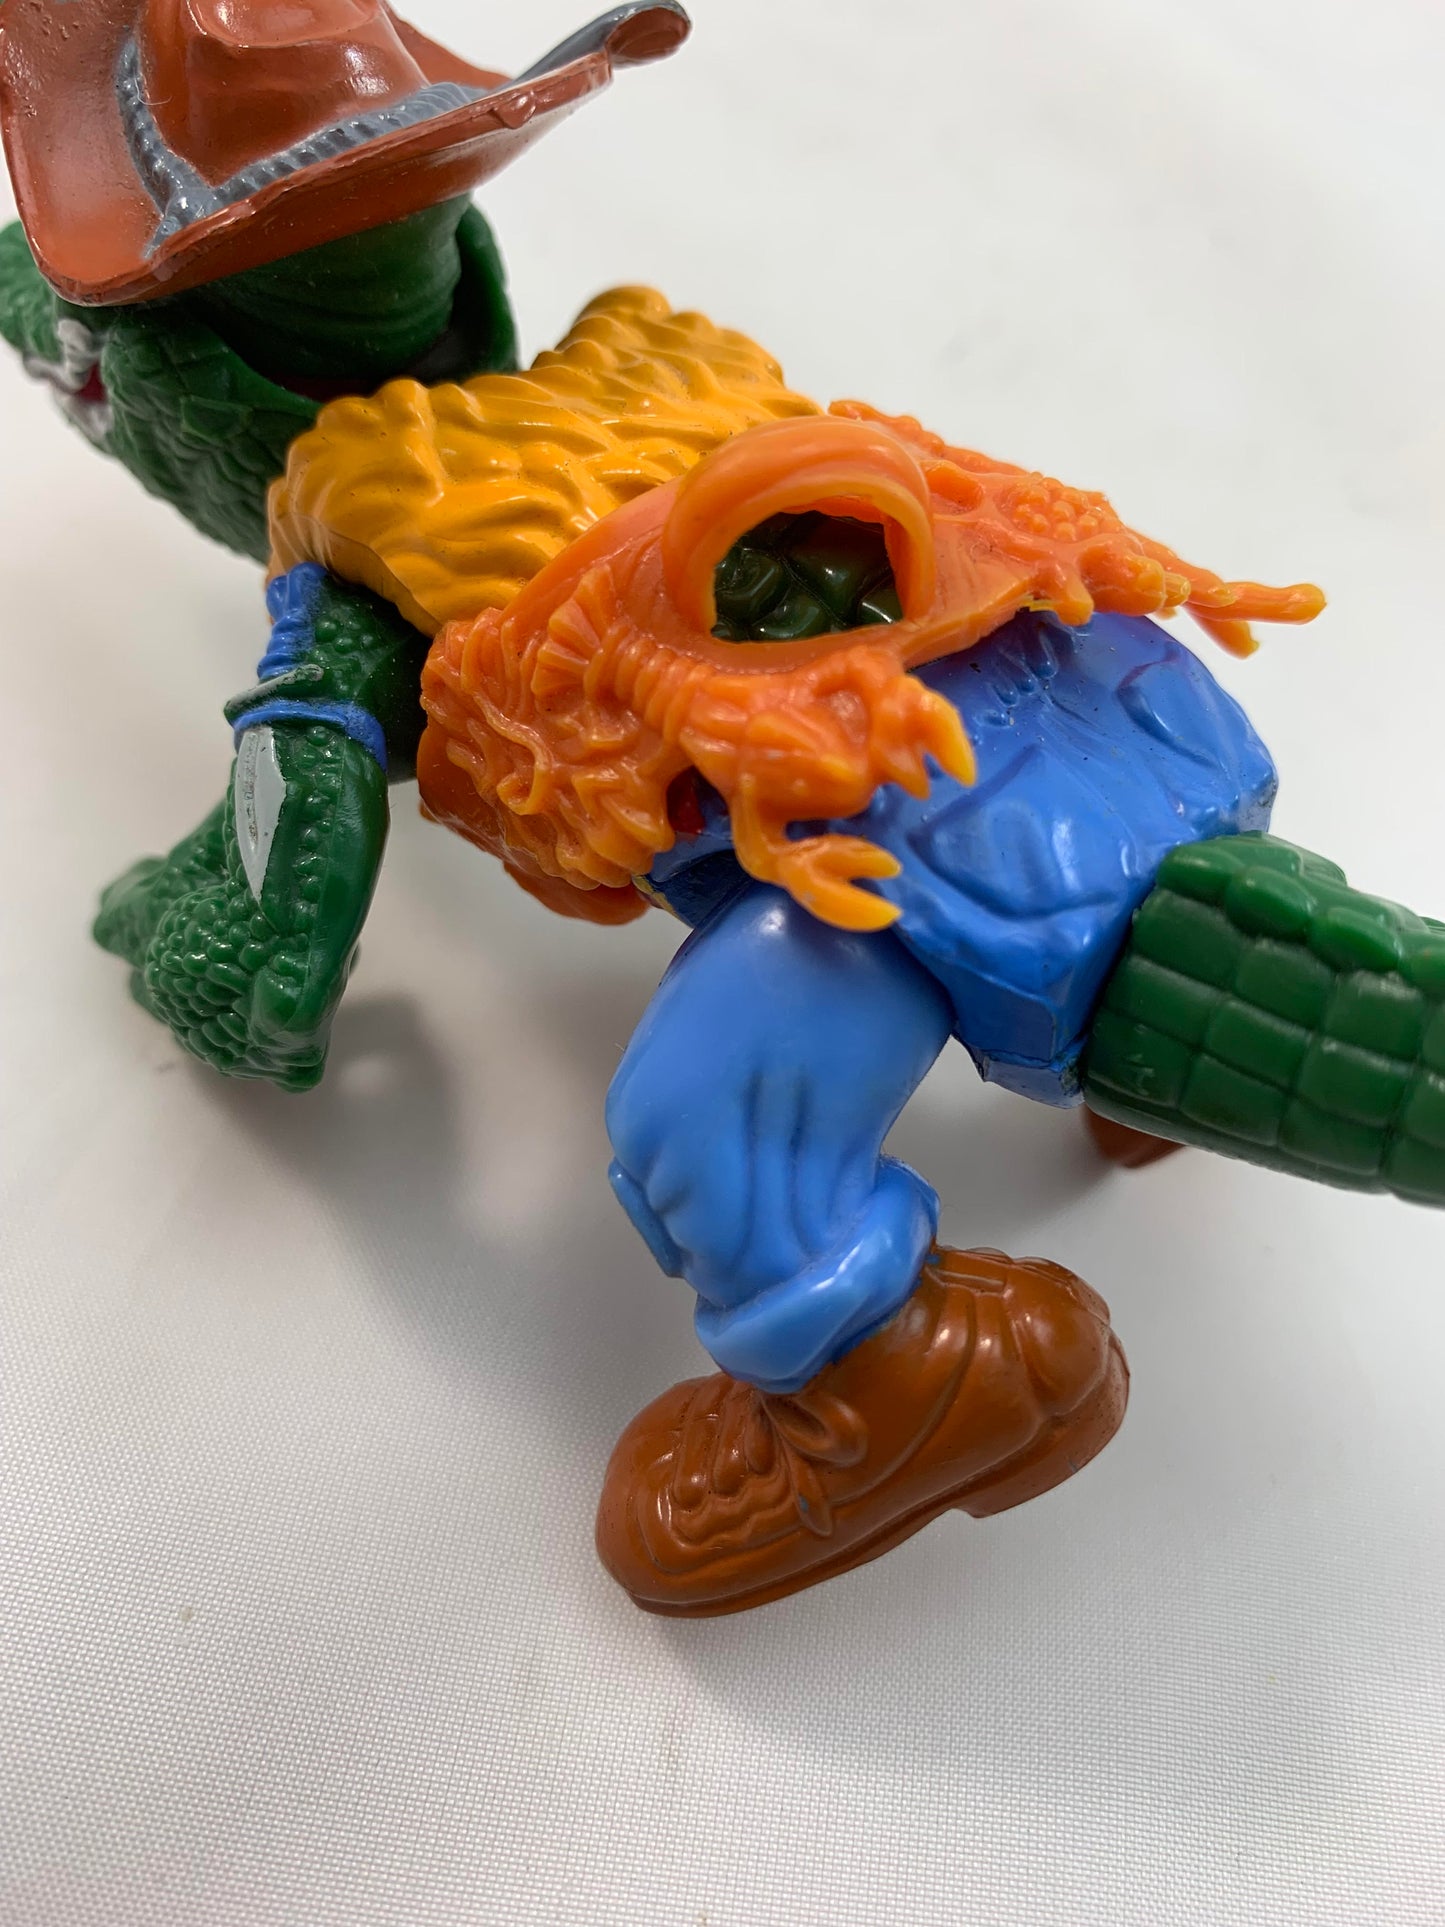 Playmates Vintage TMNT Teenage Mutant Ninja Turtles figure Leatherhead - Complete 1989 - Loose